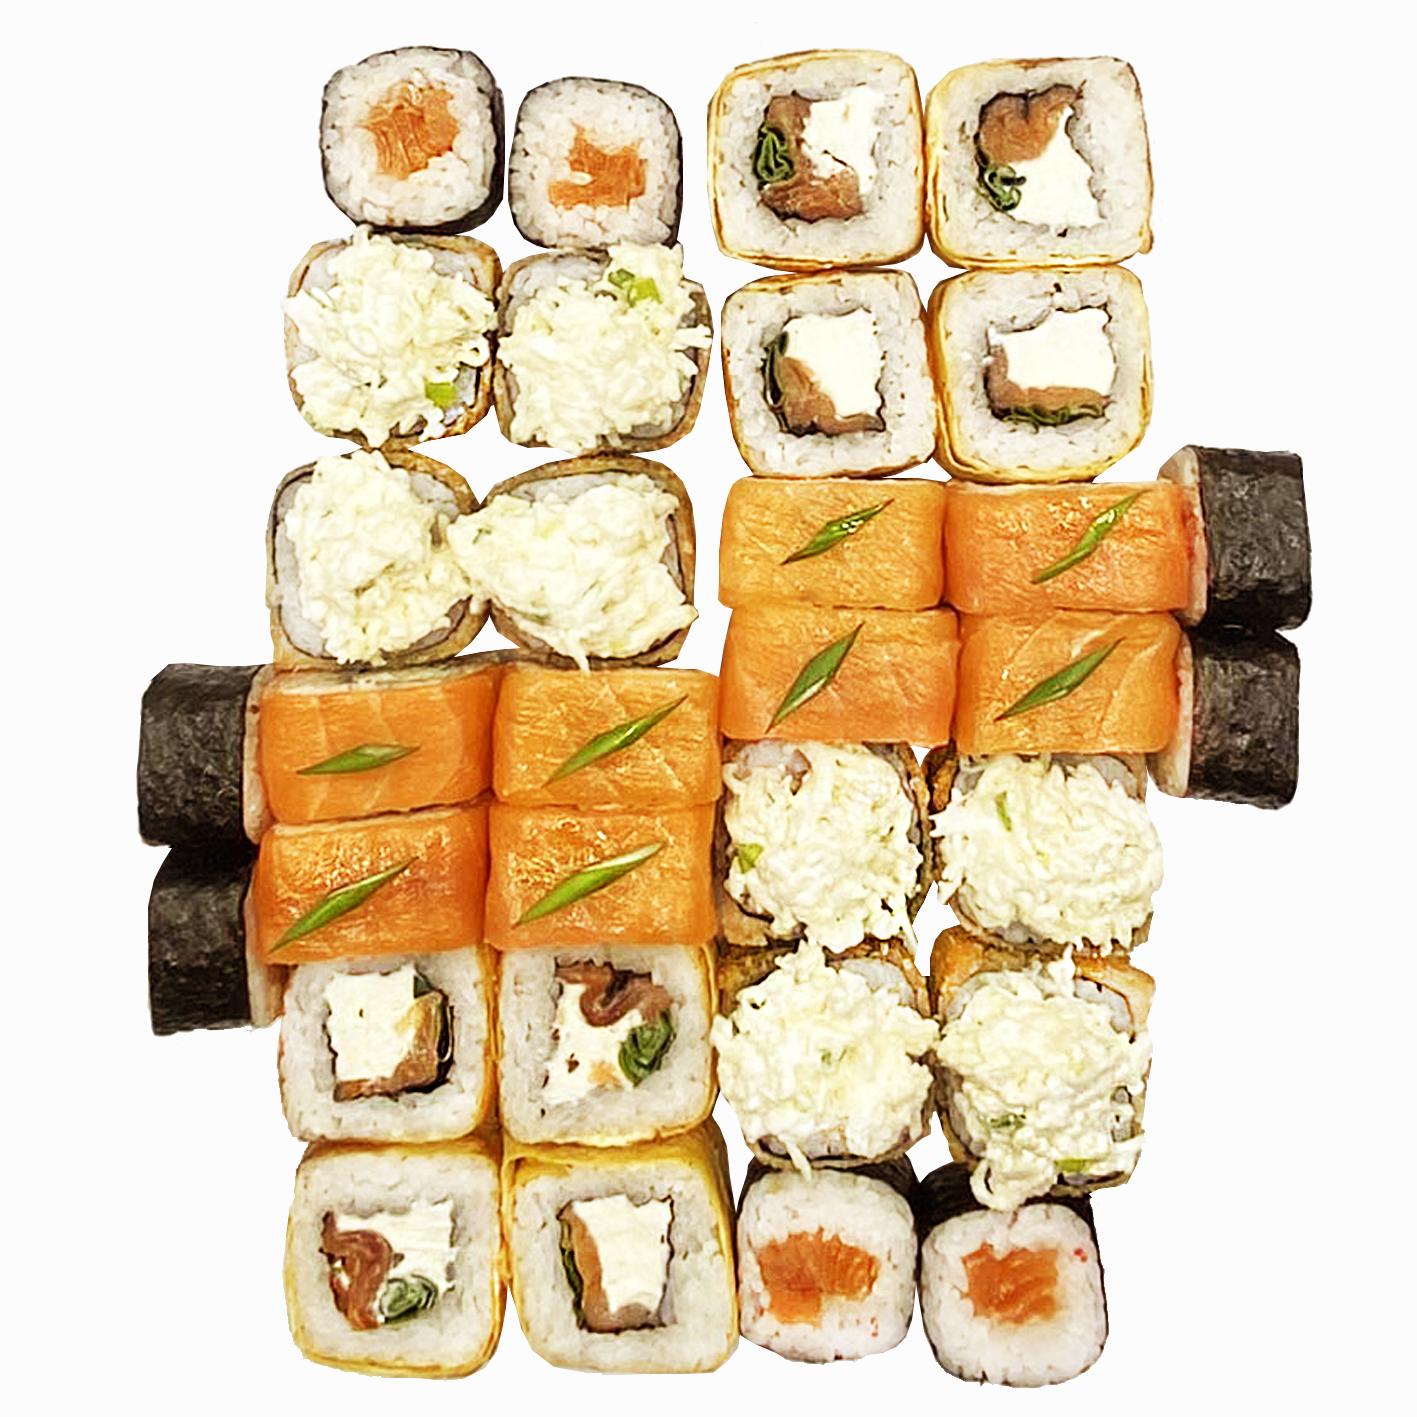 Заказать сеты суши в севастополе фото 92